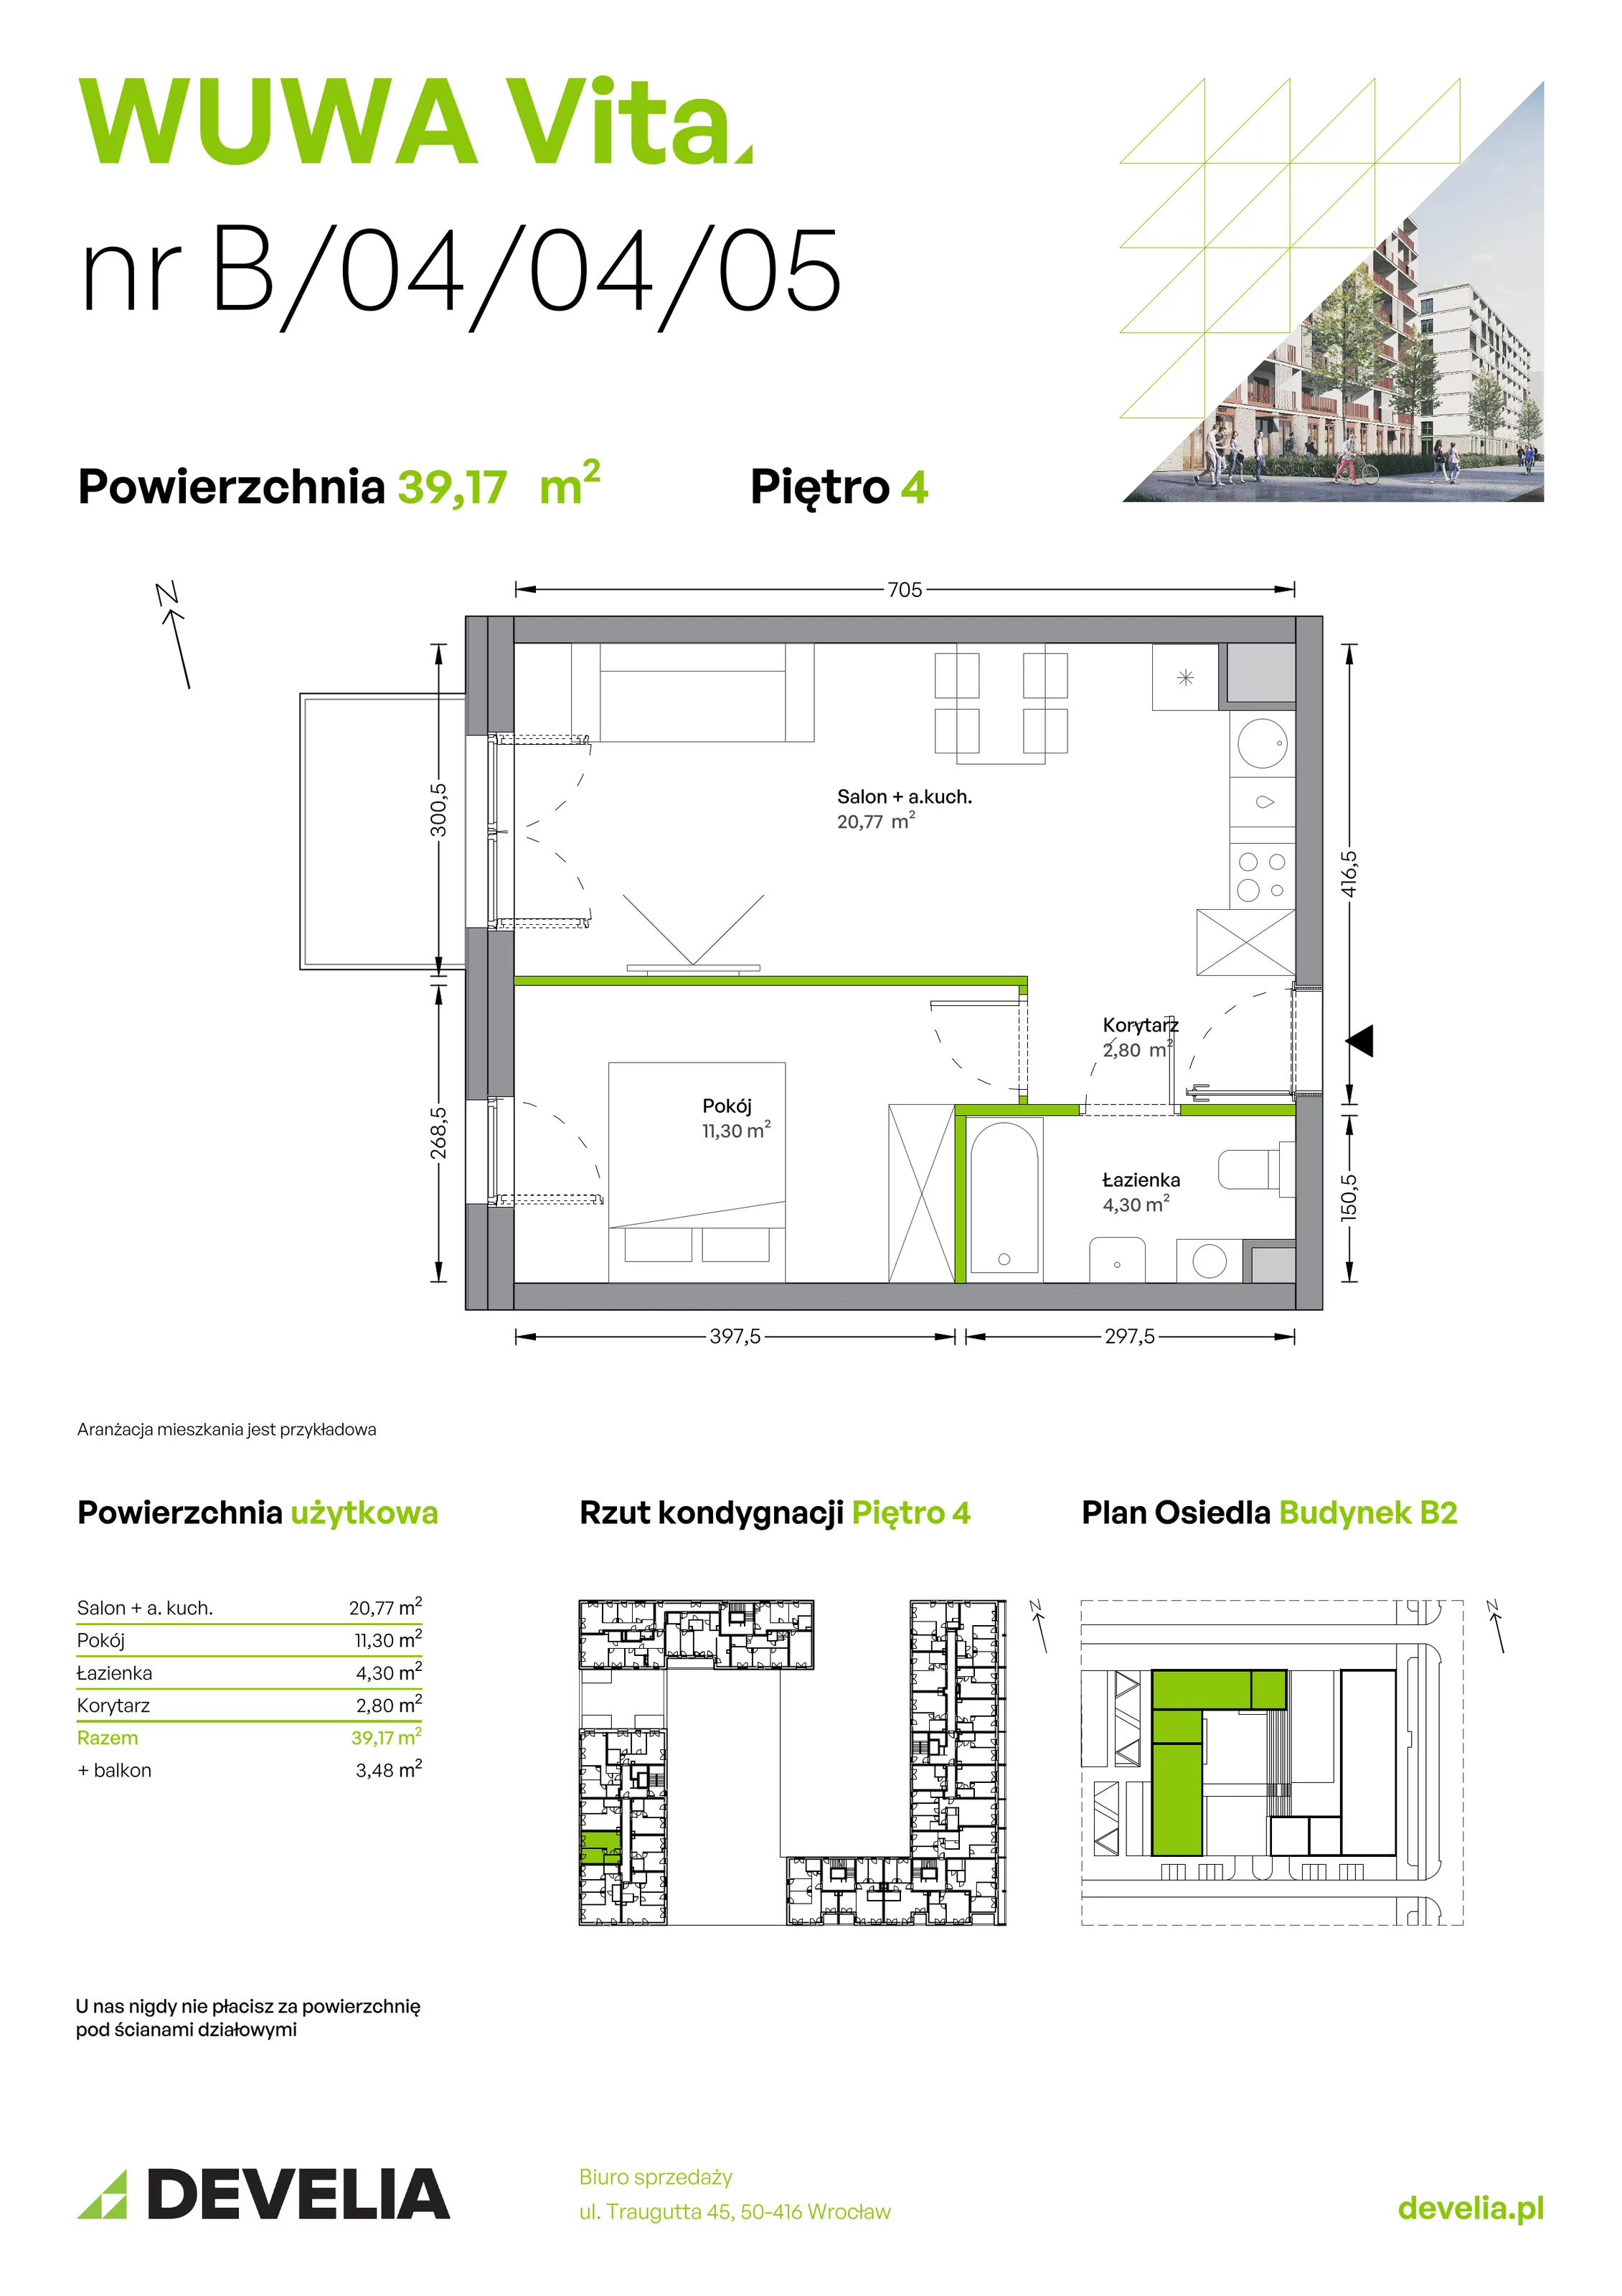 Mieszkanie 39,17 m², piętro 4, oferta nr B.04.04.05, WUWA Vita, Wrocław, Żerniki, Fabryczna, ul. Tadeusza Brzozy